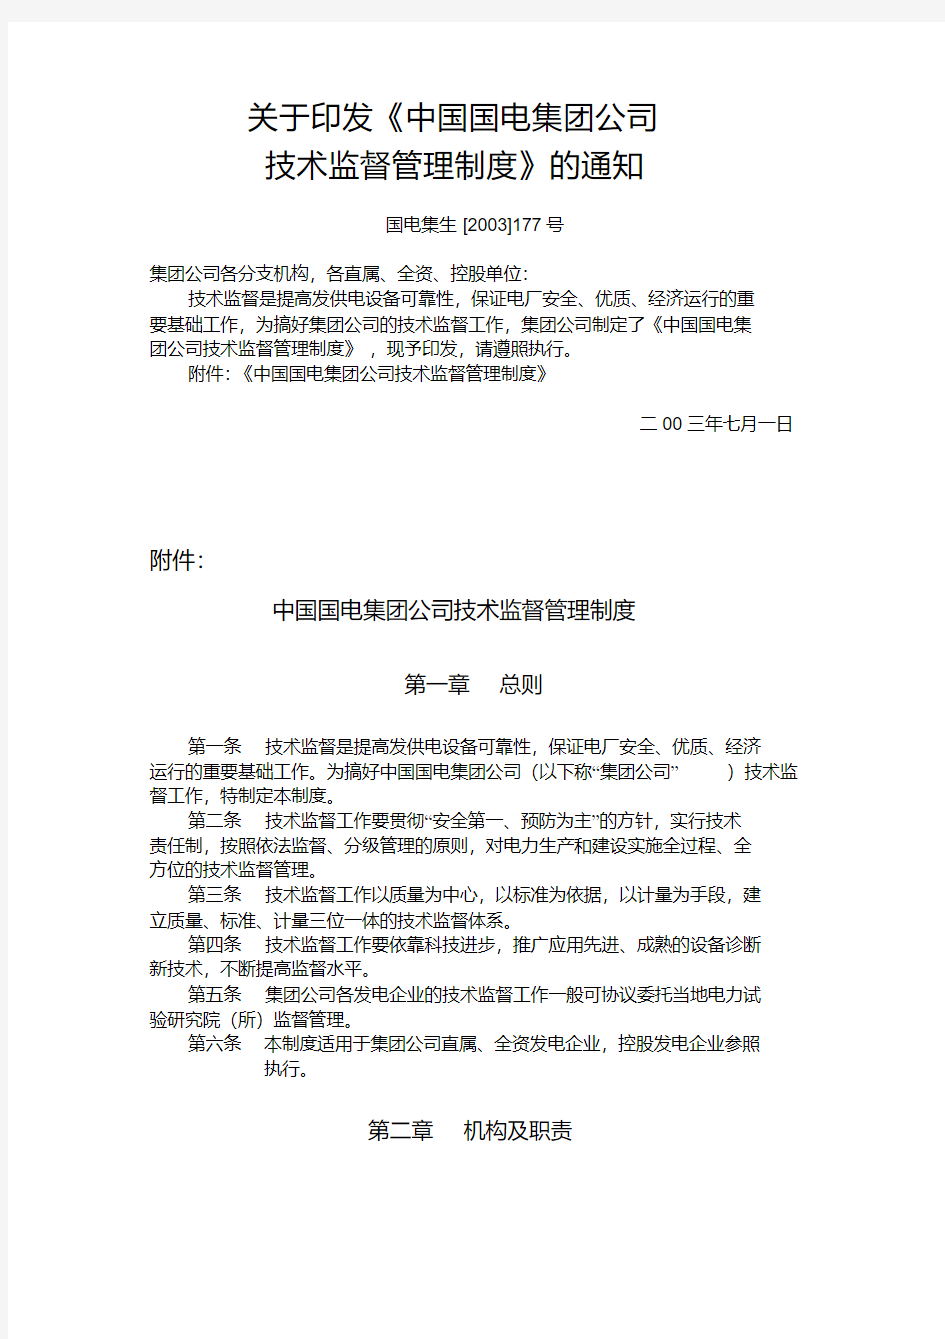 中国国电集团公司技术监督管理制度.pdf